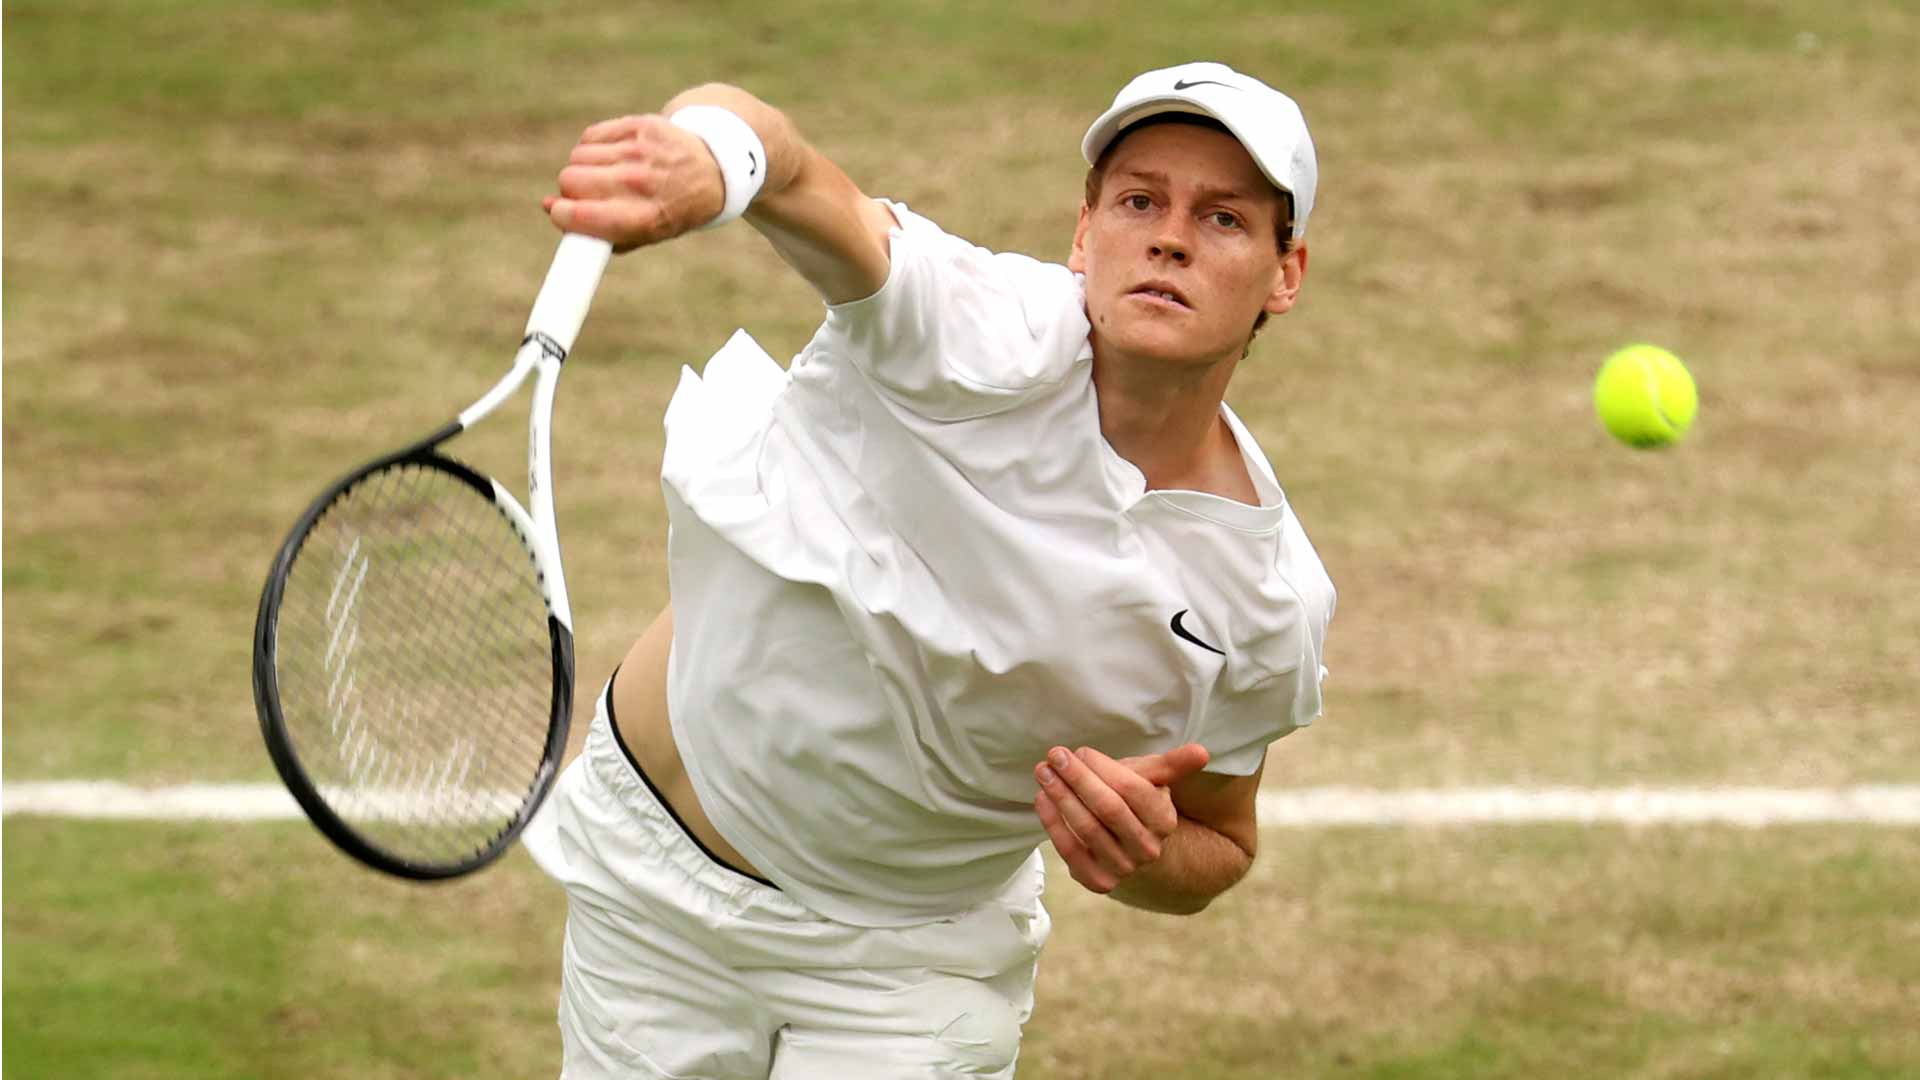 Jannik Sinner defeats Ben Shelton in straight sets Sunday at Wimbledon.